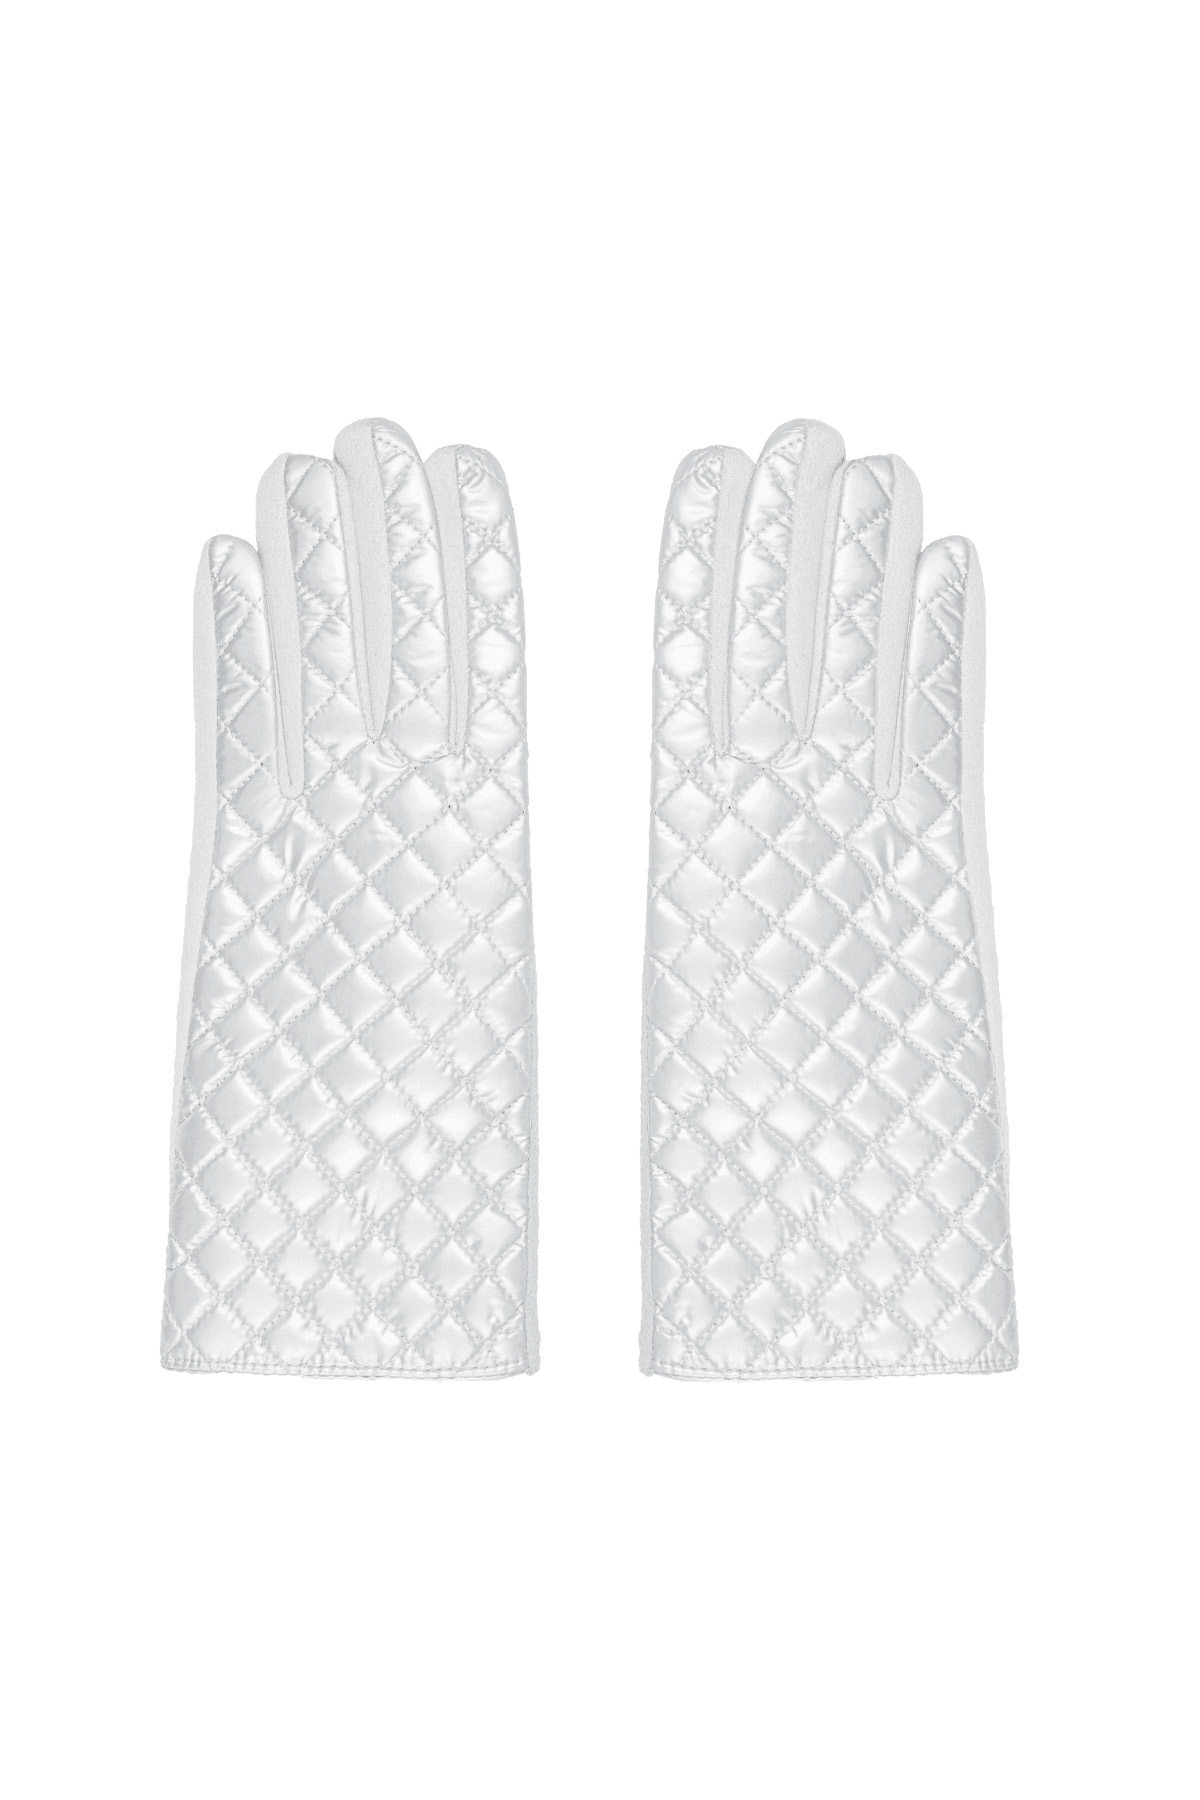 Handschoenen met gestikt patroon - wit h5 